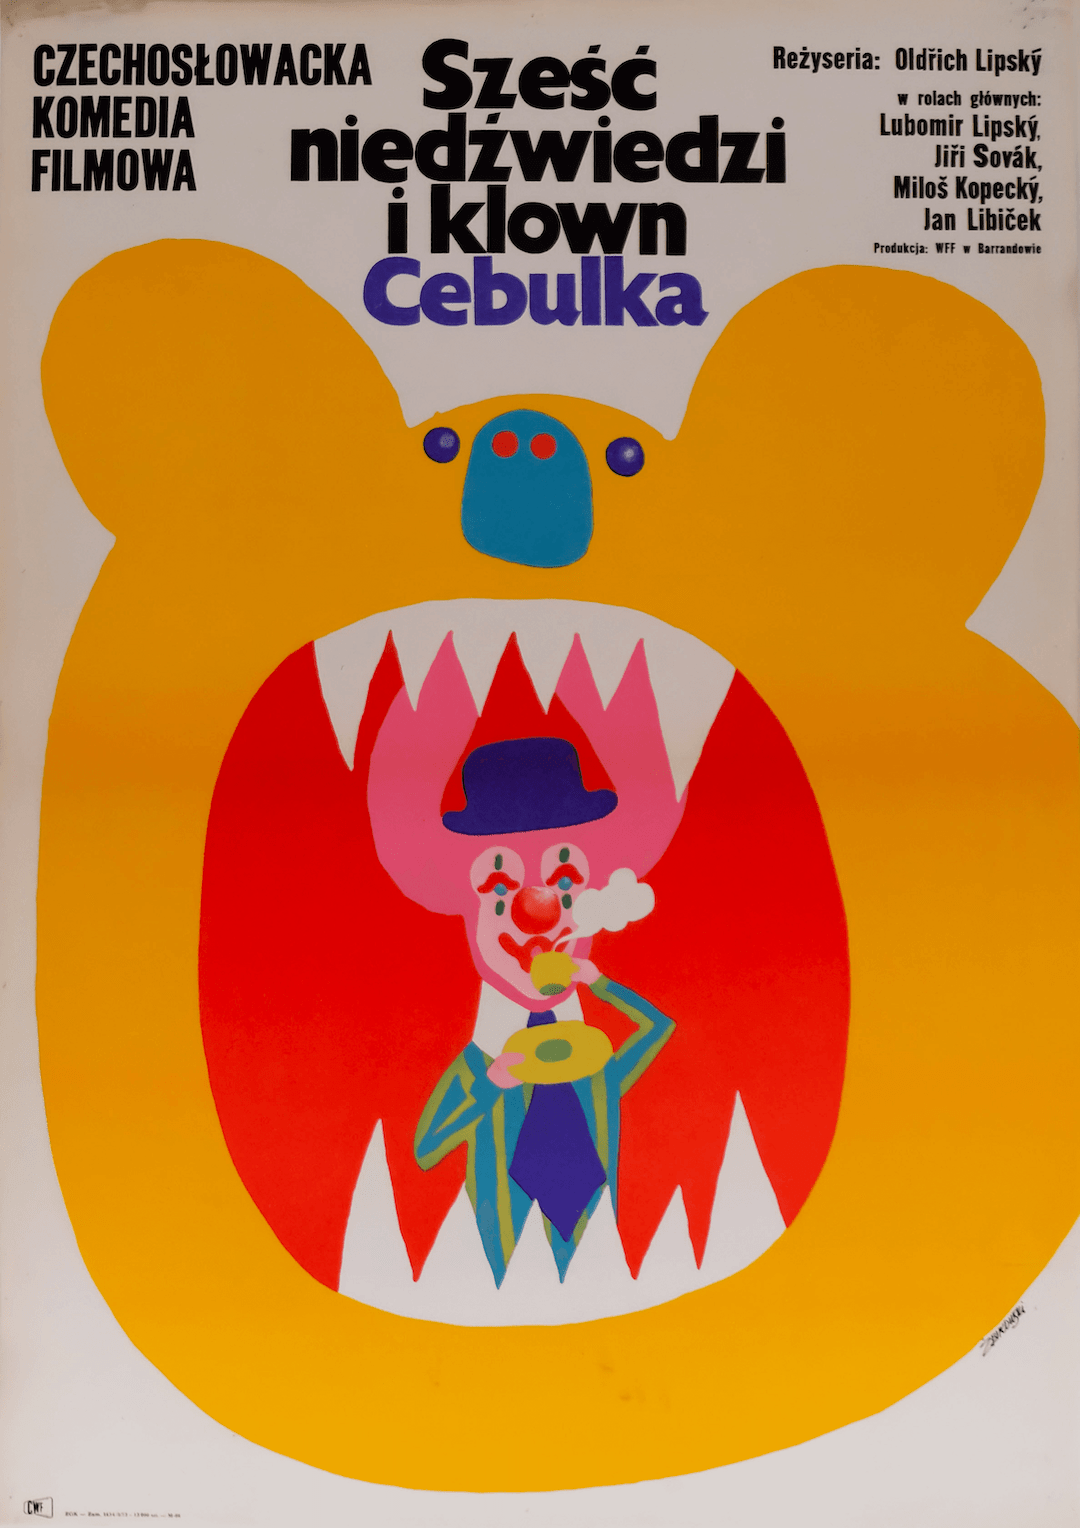 Six Bears & a Clown | Poland | 1973 - Comrade Kiev